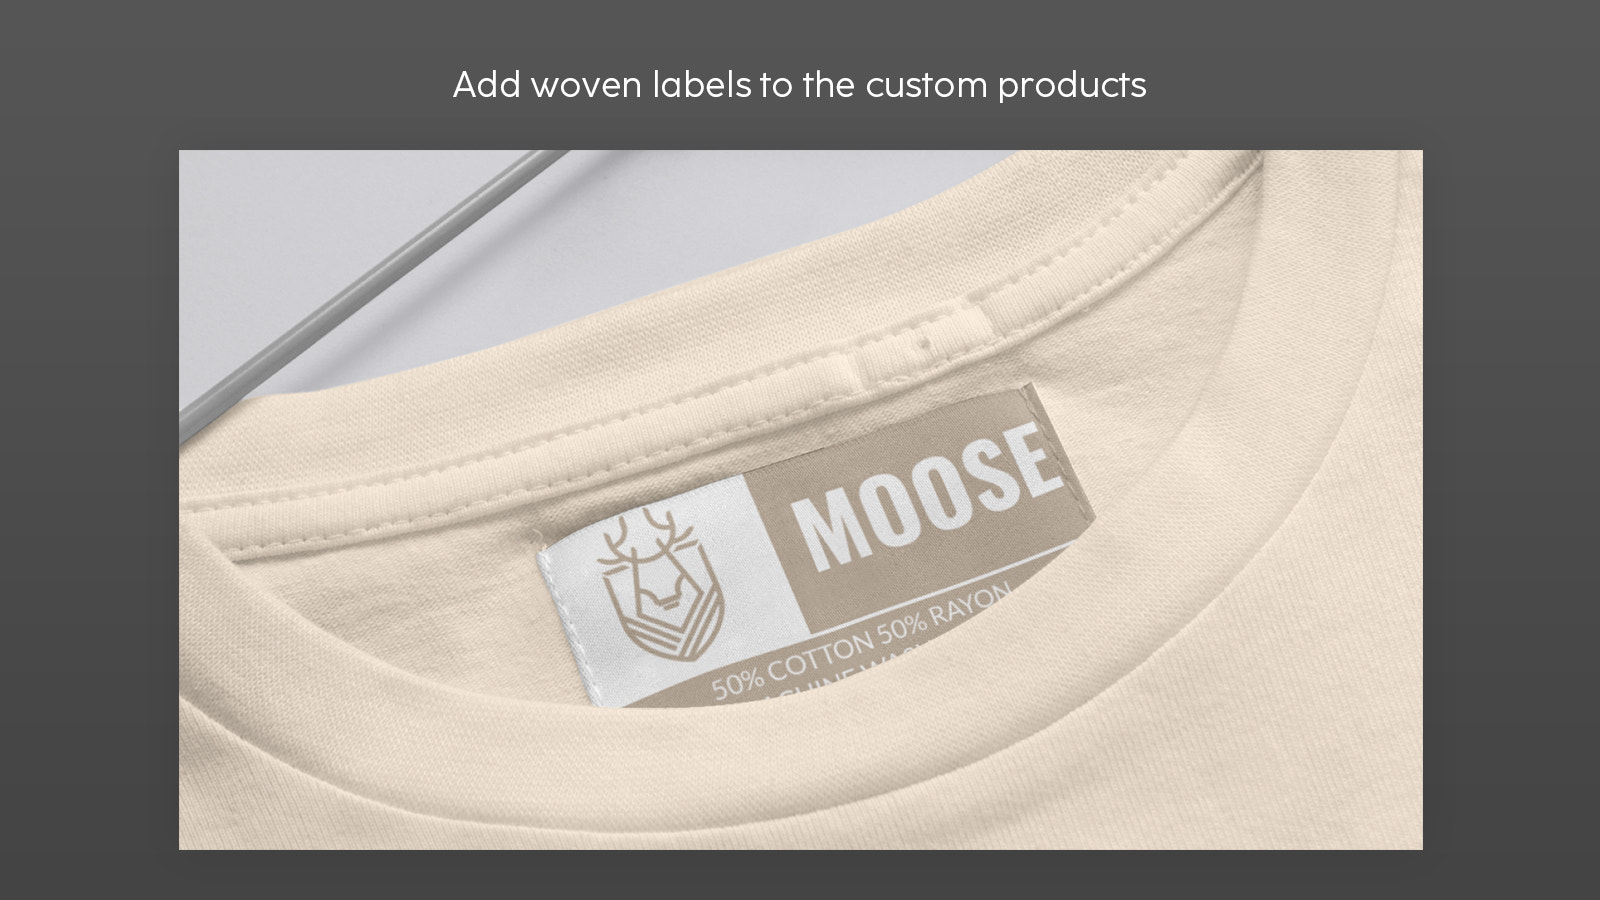 Añadir etiquetas tejidas a los productos personalizados